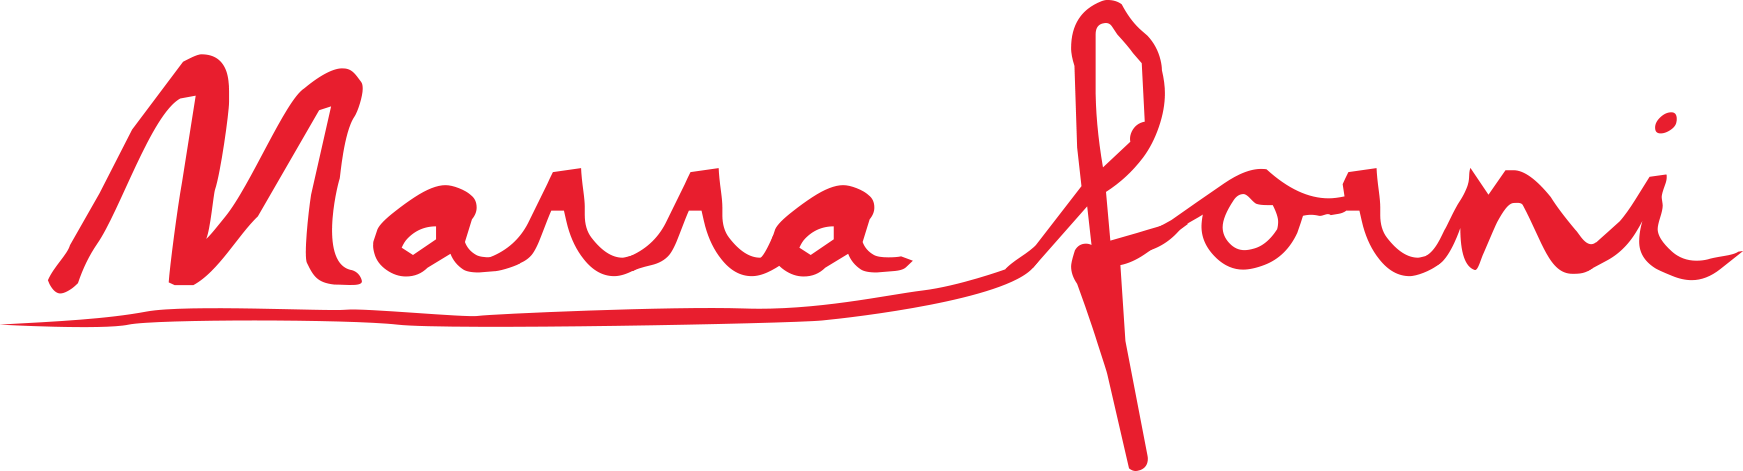 Marra Forni Pizza Ovens - Marra Forni Logo (1743x471)